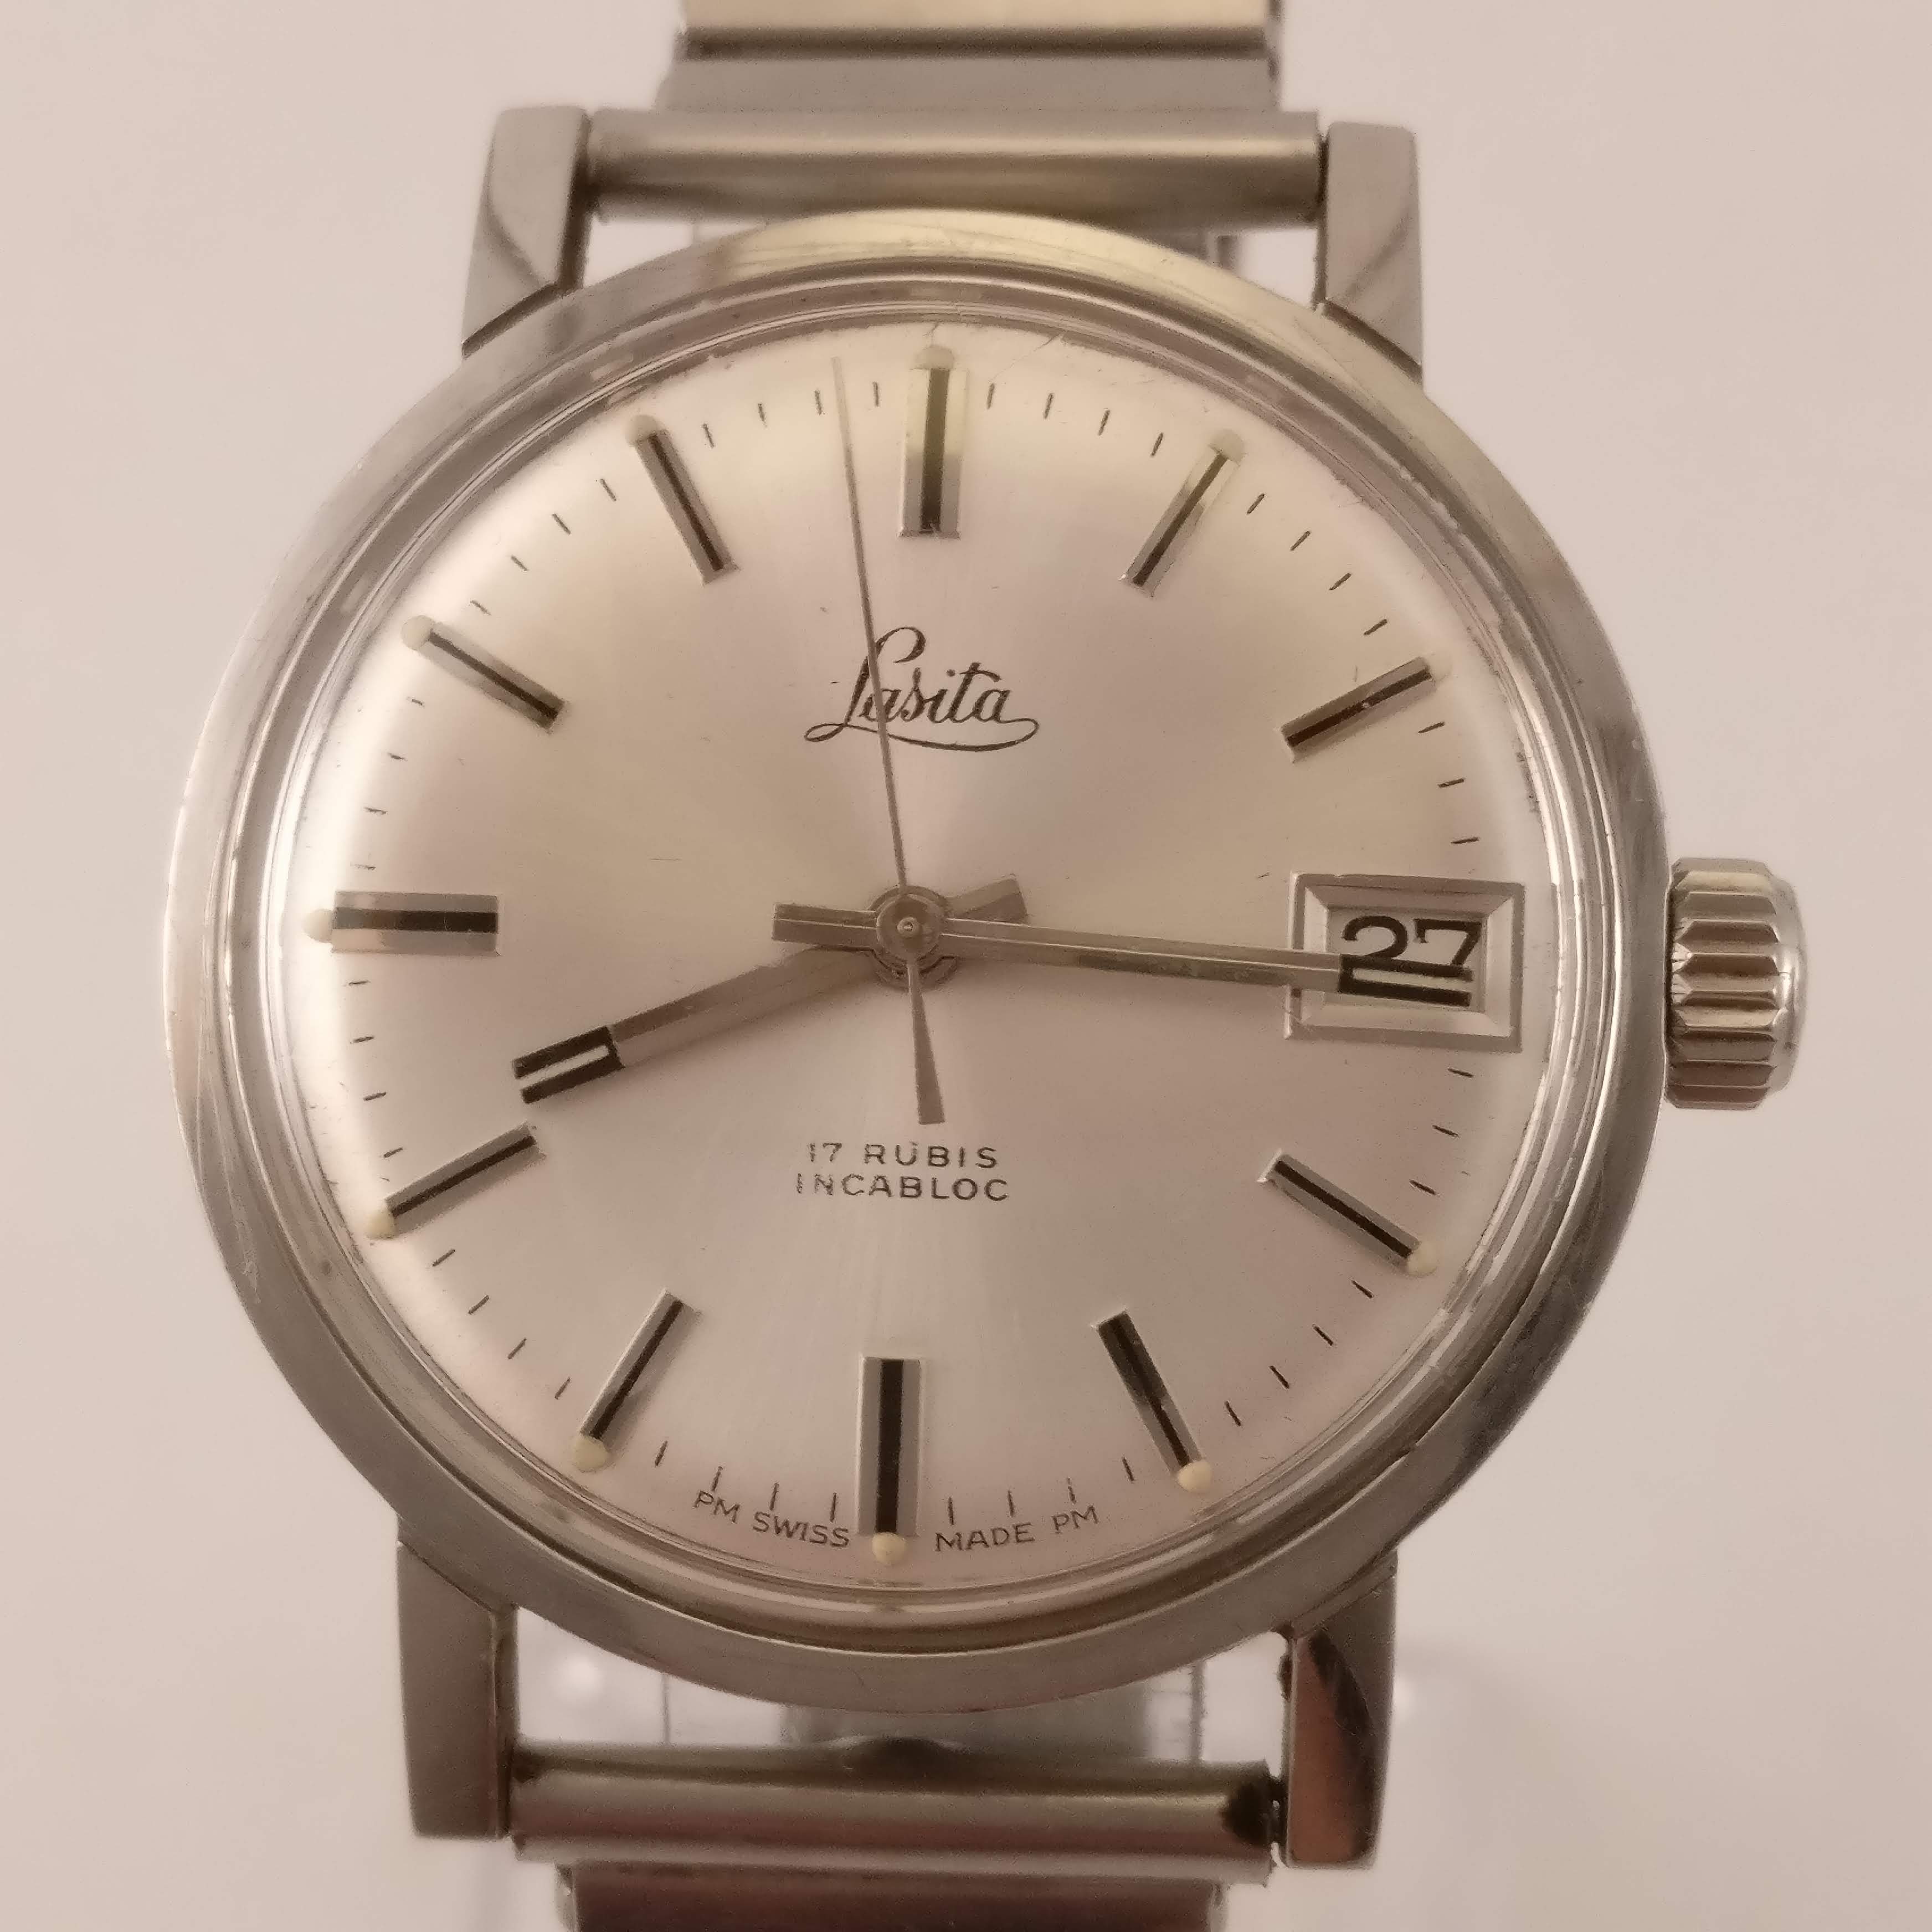 Matig Indrukwekkend vijver Lasita Vintage Heren Horloge